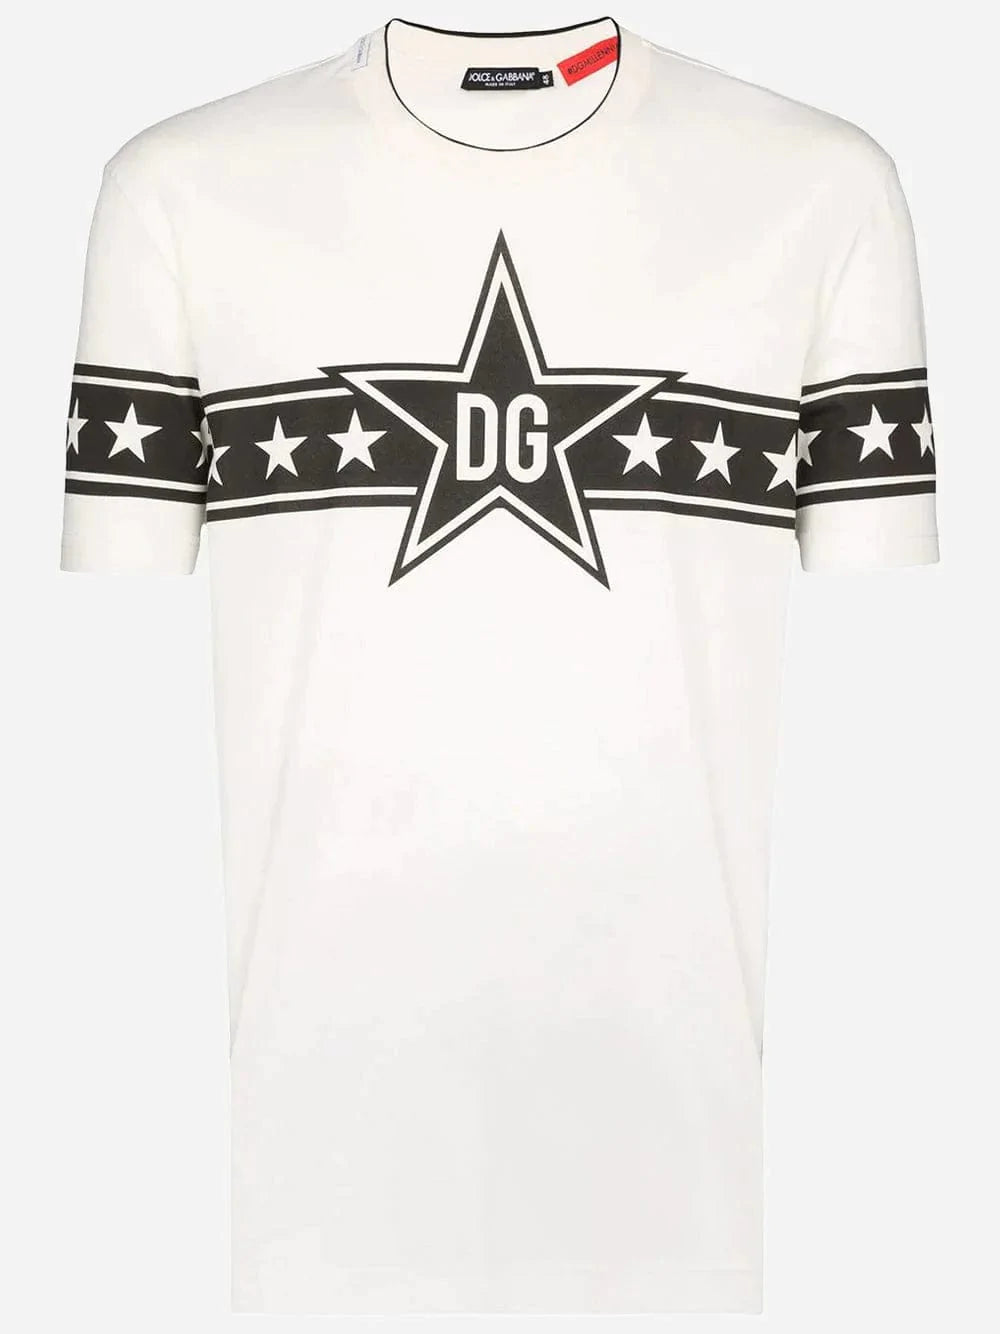 Dolce & Gabbana DG Star Logo T-Shirt